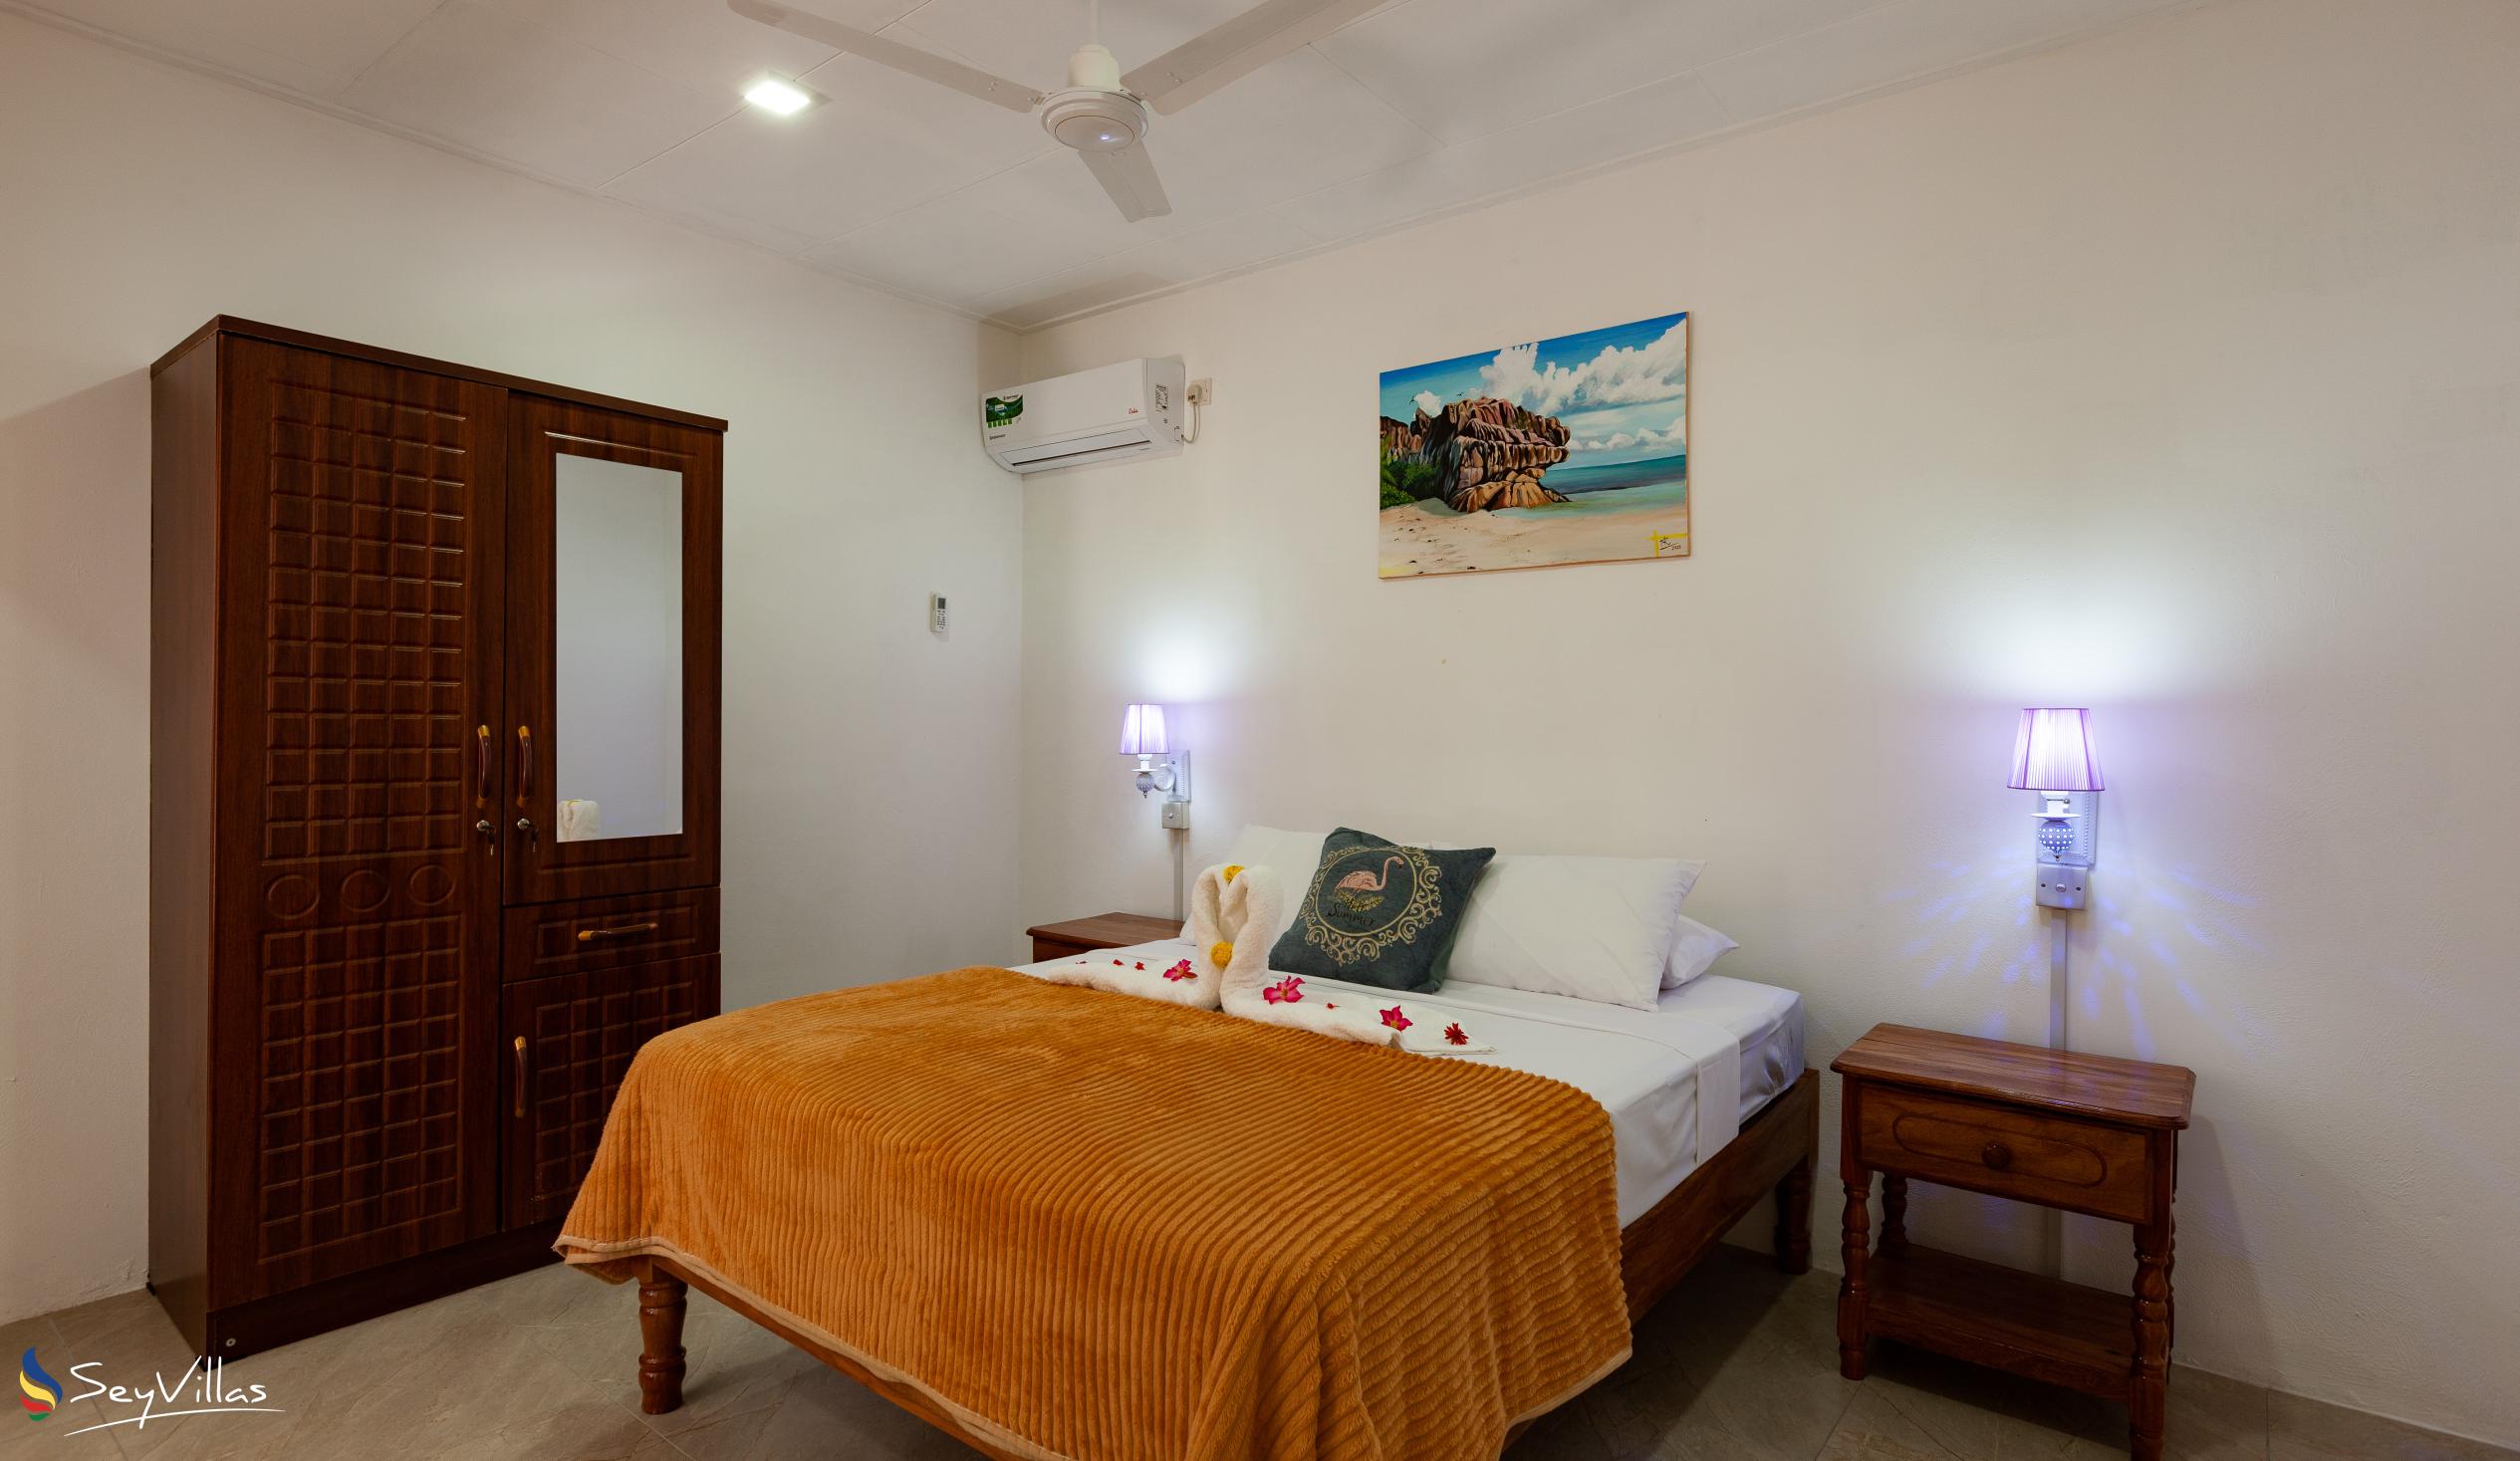 Foto 52: Anse Grosse Roche Beach Villa - Appartamento Familiare con 2 camere da letto - La Digue (Seychelles)